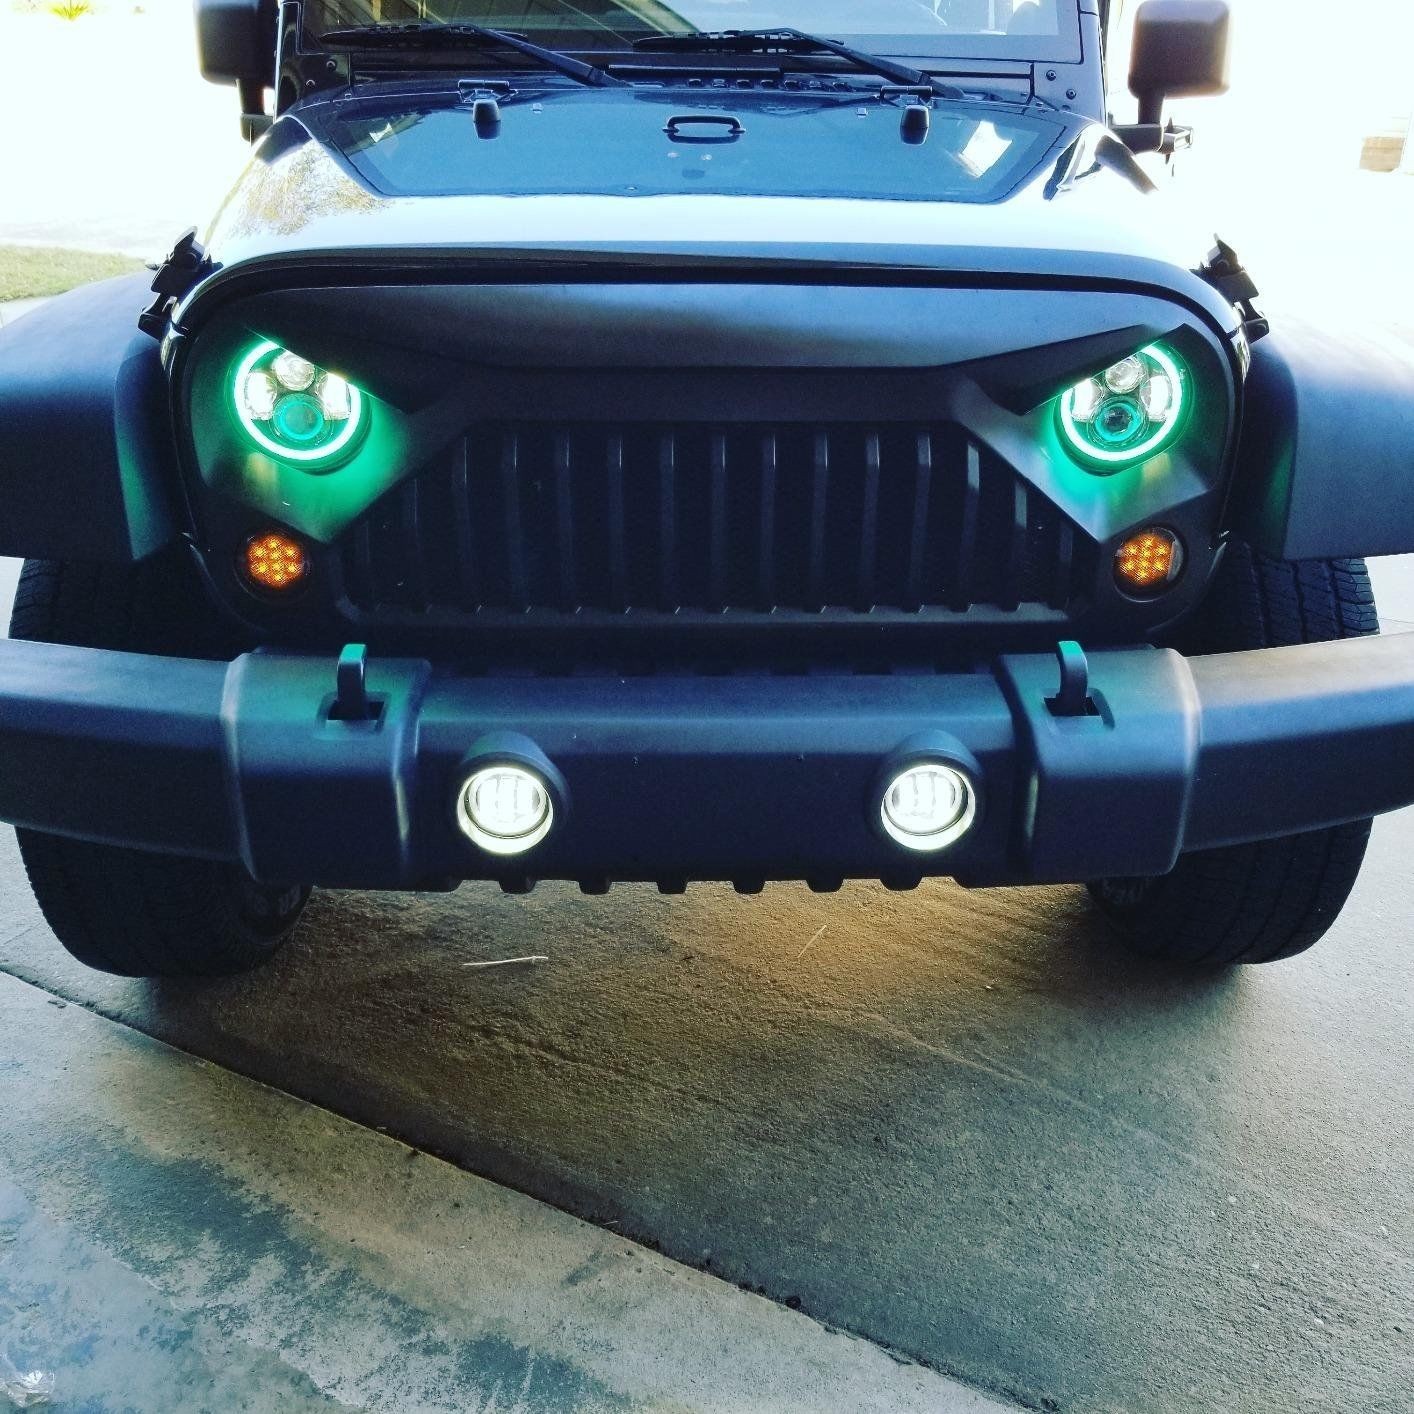 Fits Jeep Wrangler JK LED Headlight w RGB Multi Color Halo Fog Light bo Kit